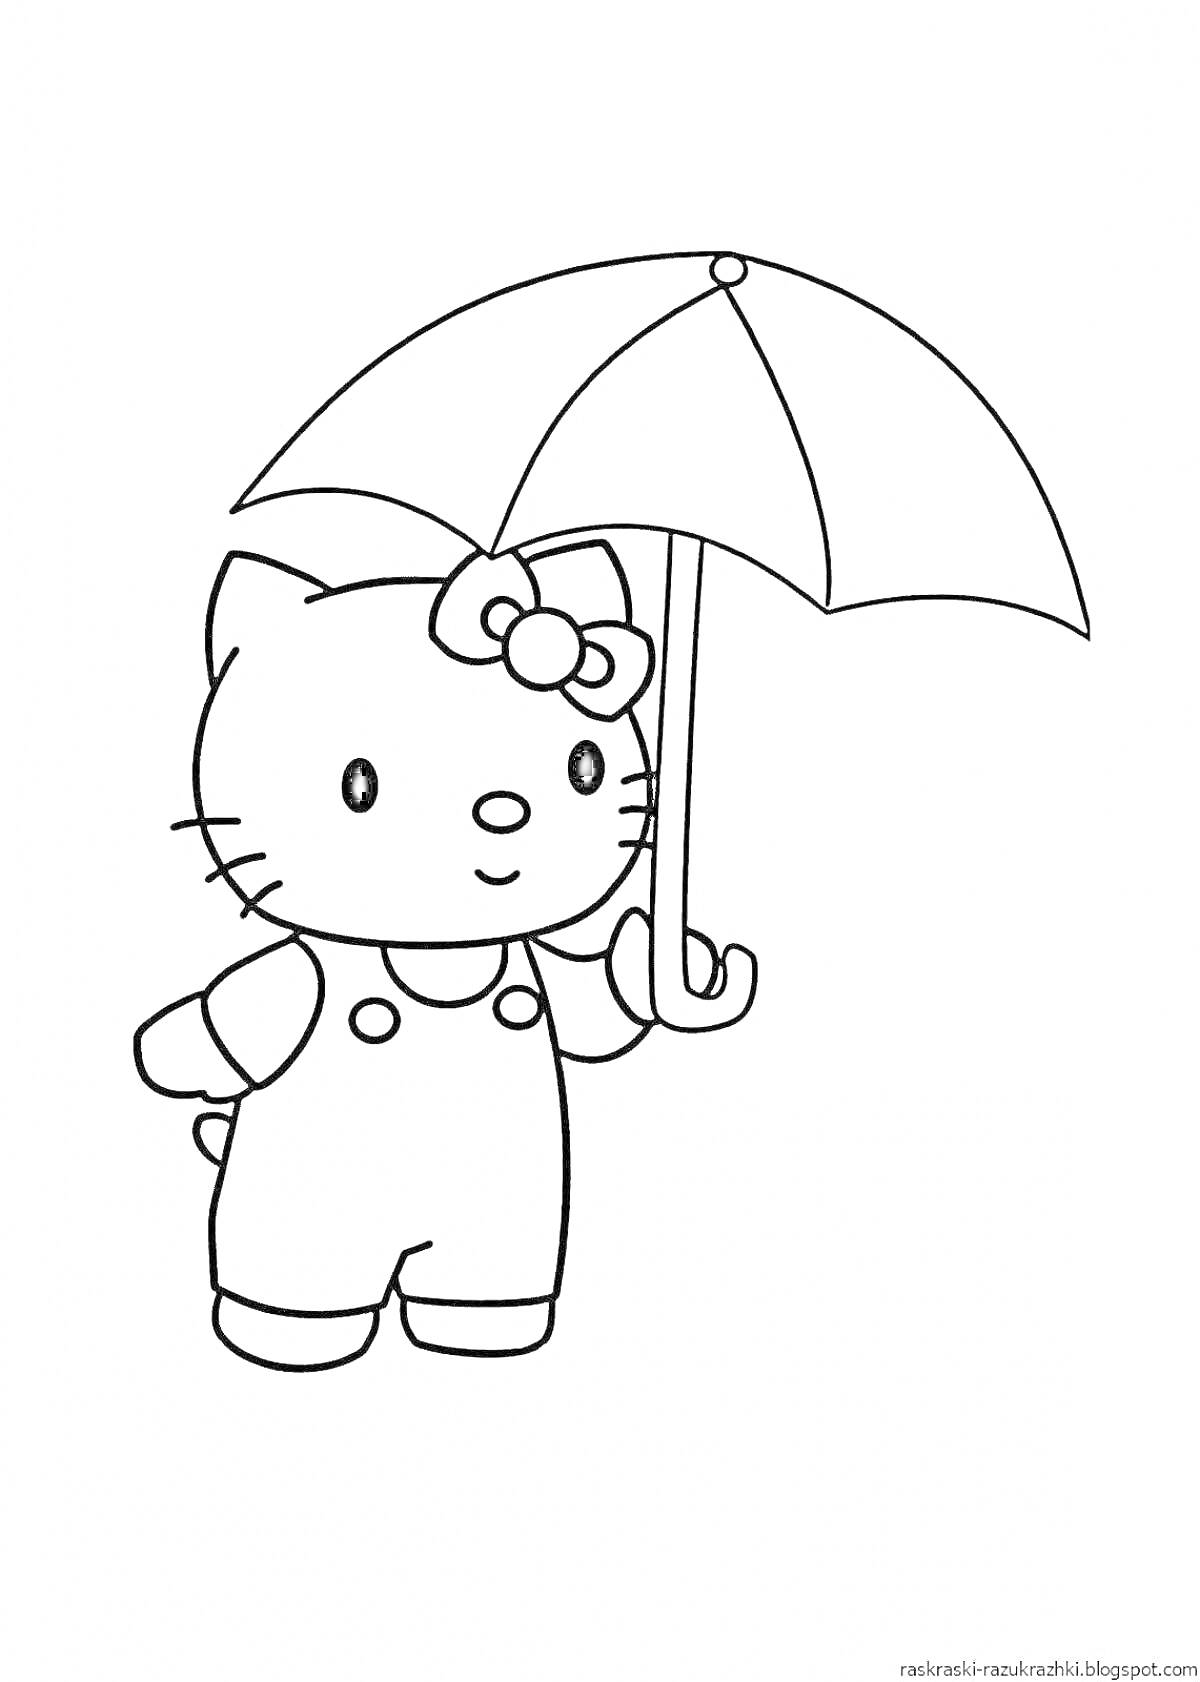 Раскраска Кошечка в комбинезоне с зонтиком